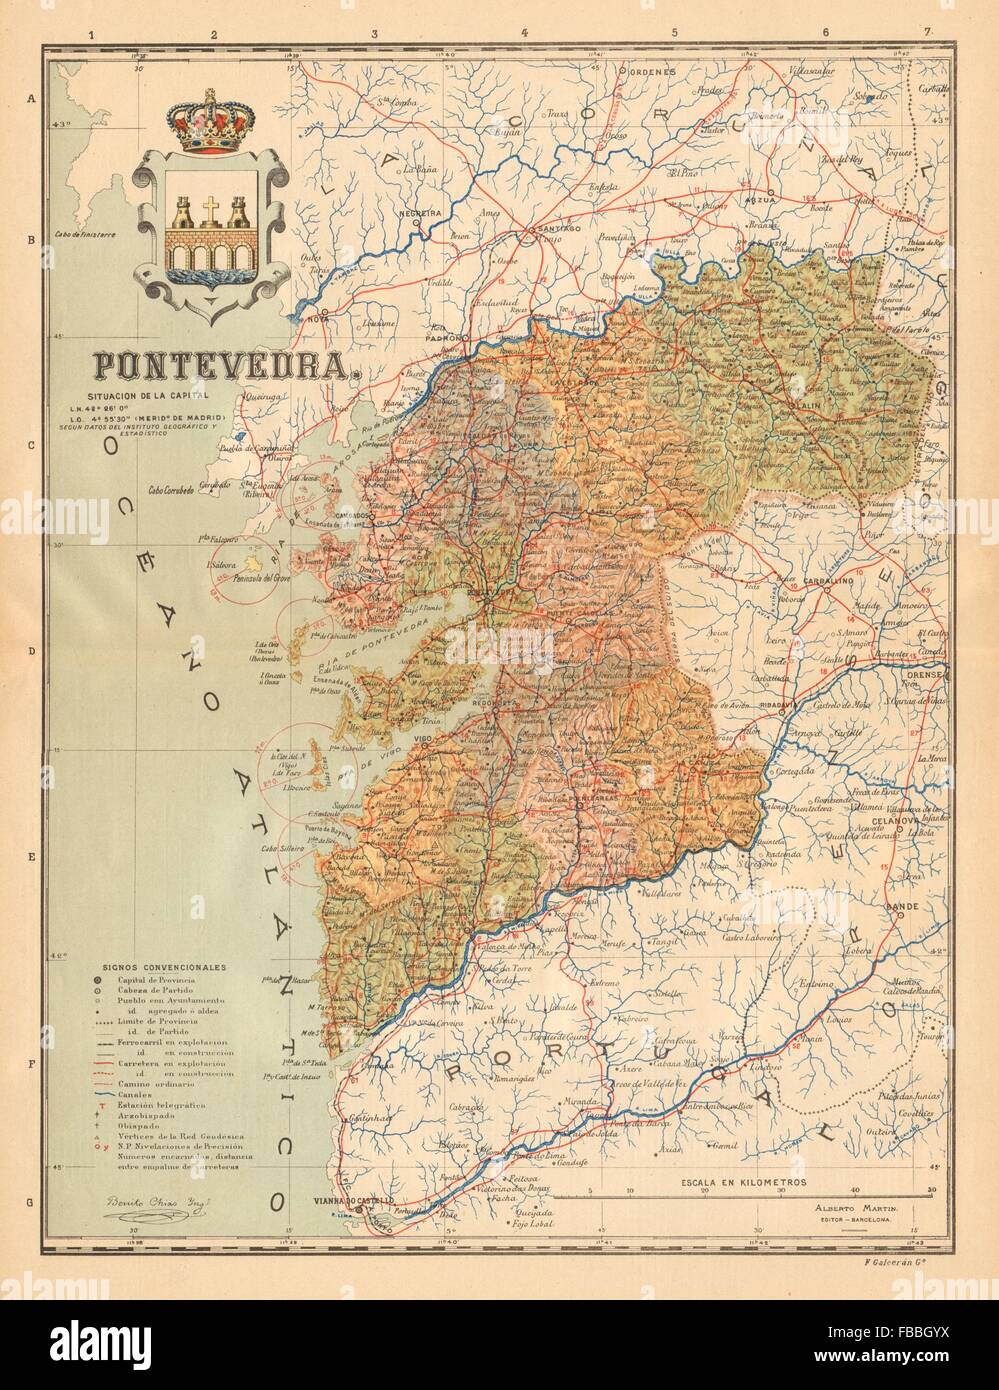 PONTEVEDRA. Galicia. Mapa antiguo de la provincia. ALBERTO MARTIN, c1911 Stock Photo